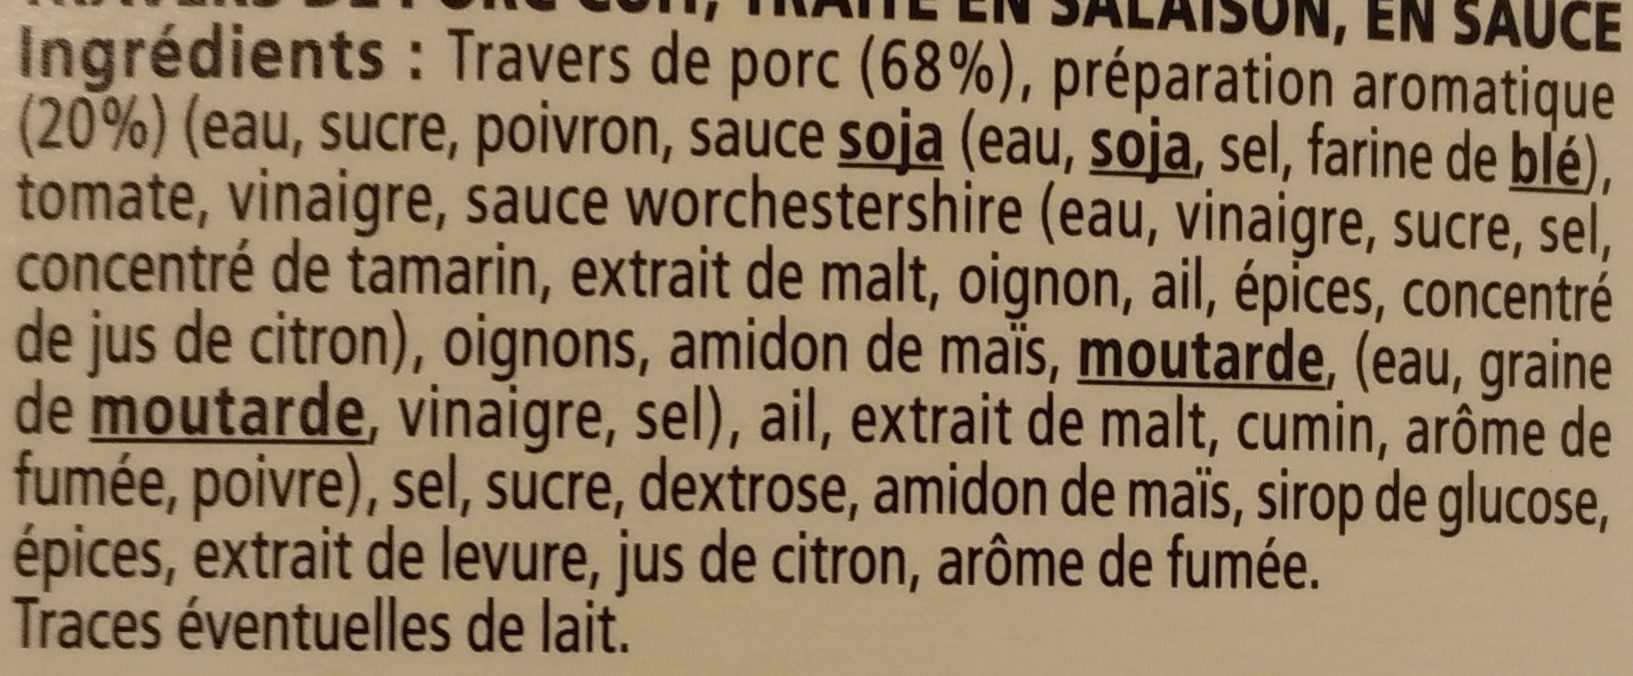 Ribs de Porc Sauce Barbecue - Ingrédients - fr